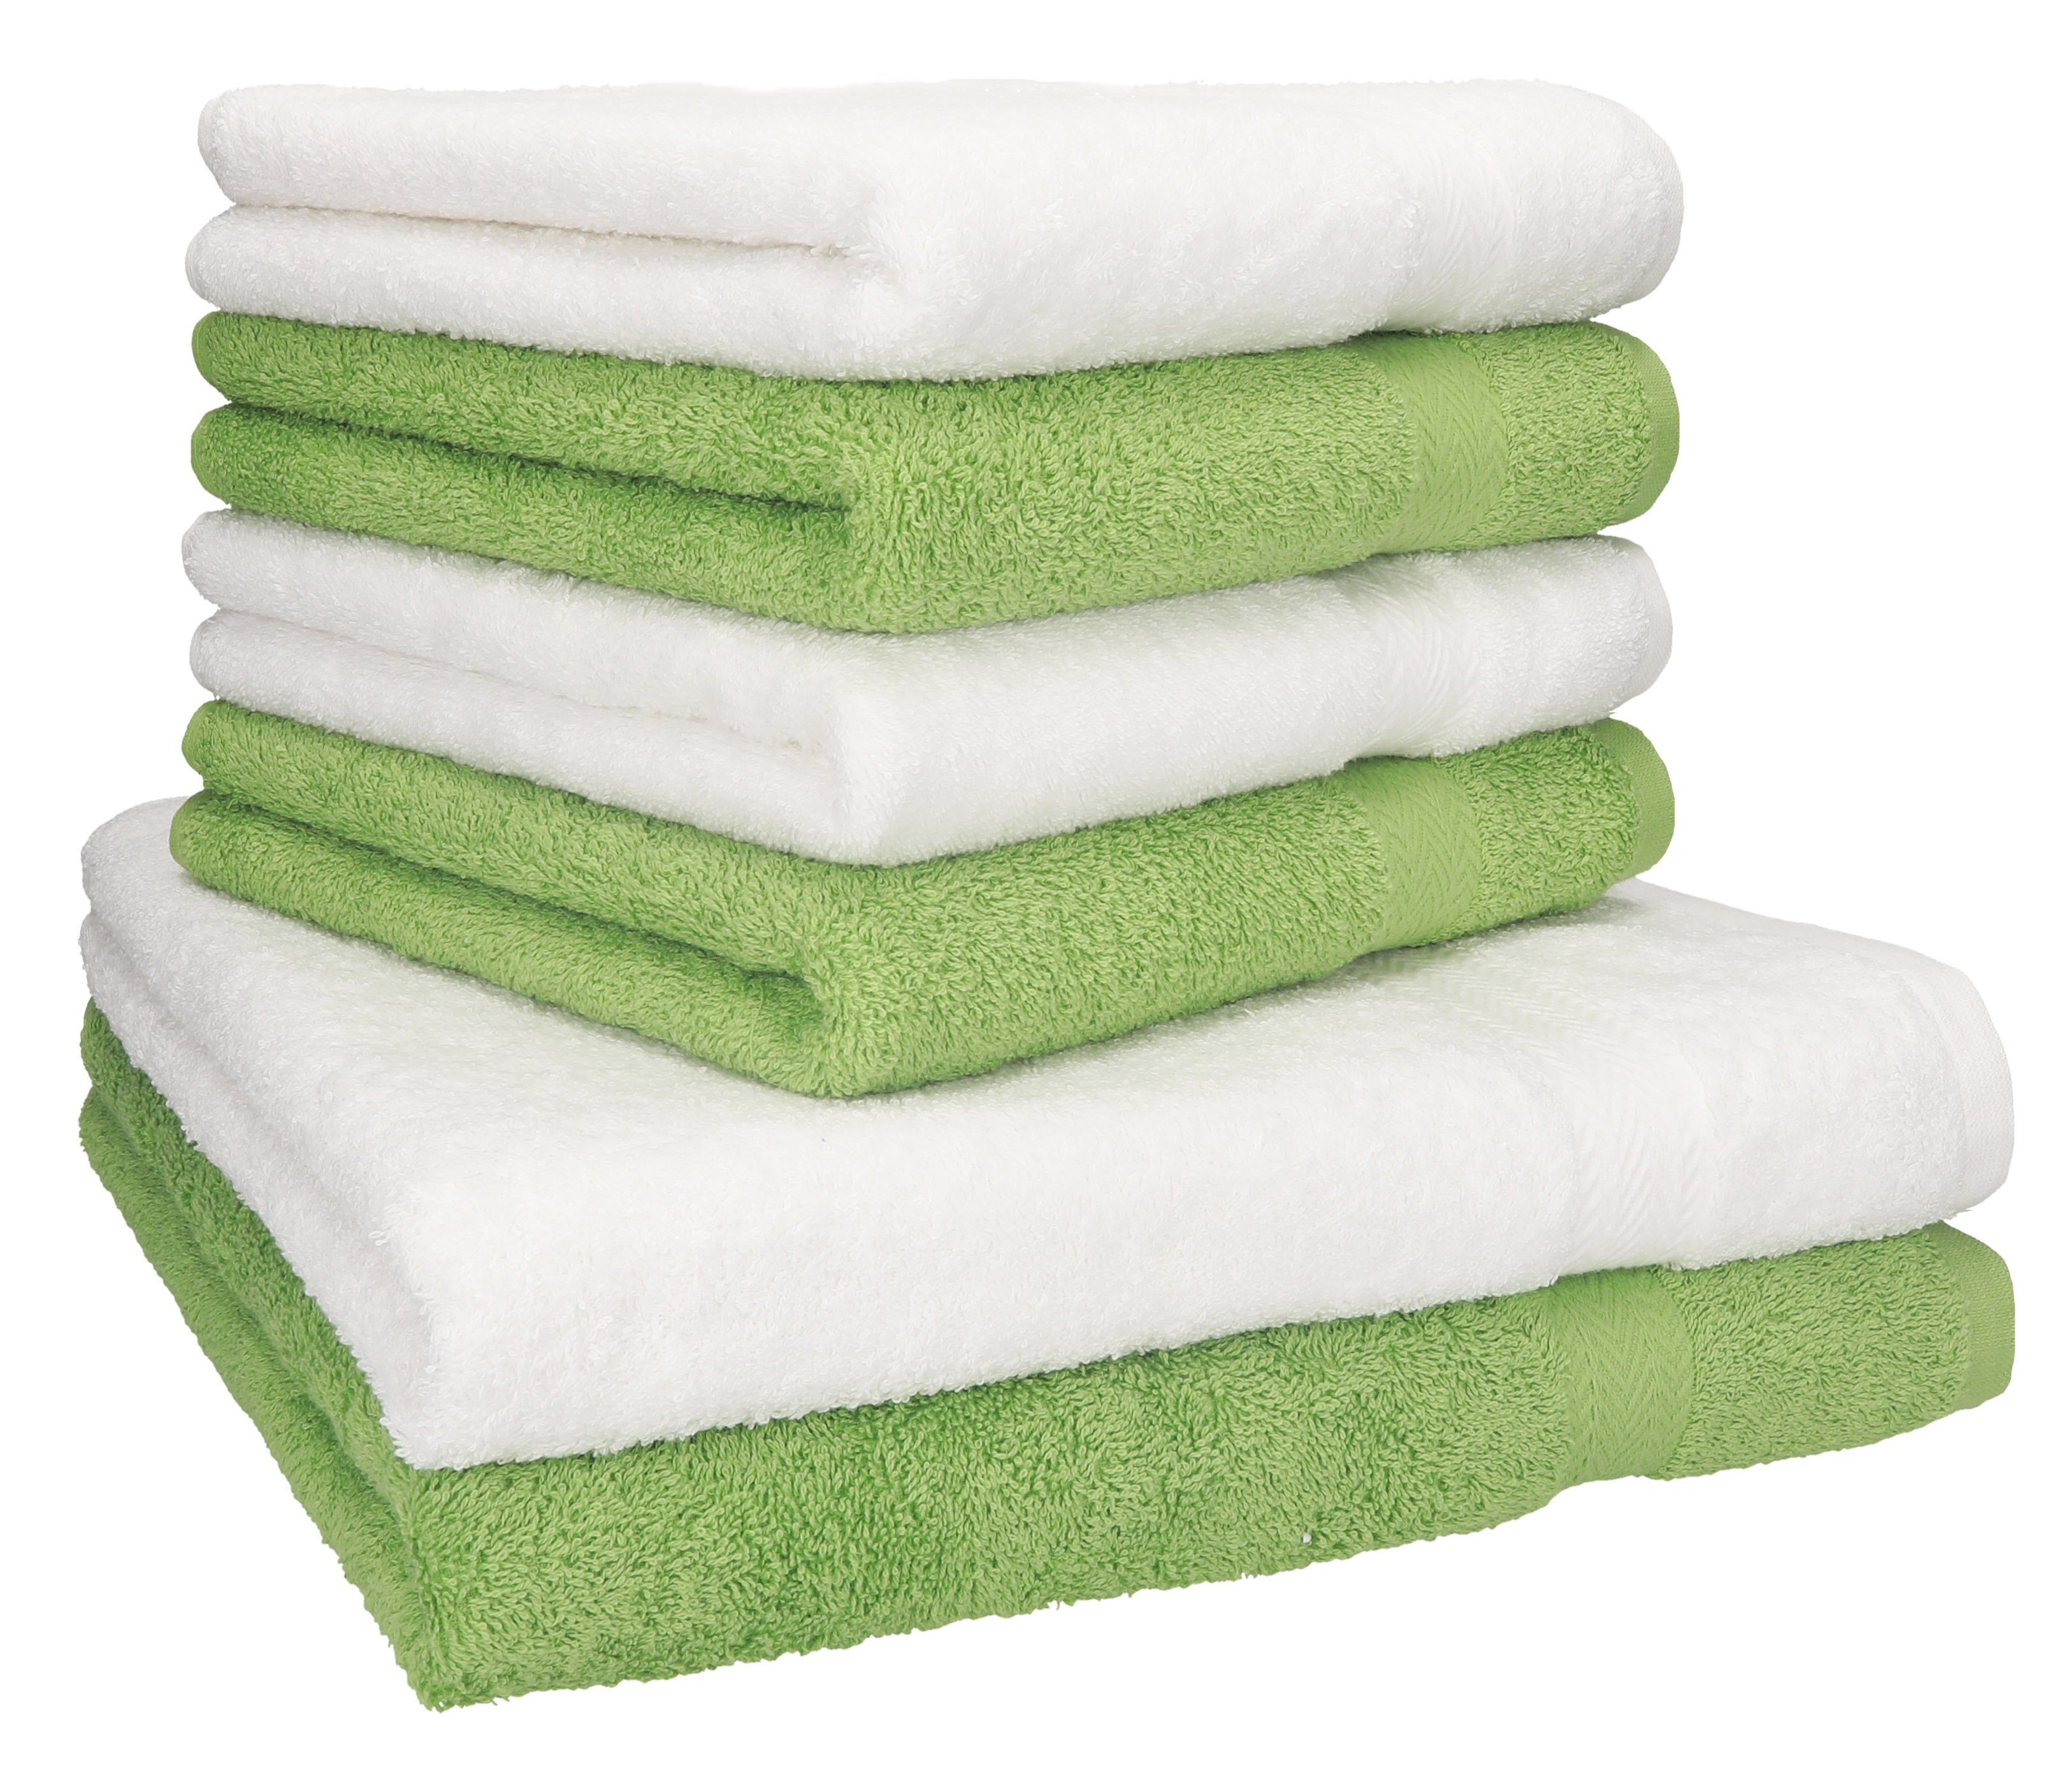 Betz Handtuch Set 6-TLG. Handtuch-Set Premium 100% Baumwolle 2 Duschtücher 4 Handtücher Farbe weiß und apfelgrün, 100% Baumwolle